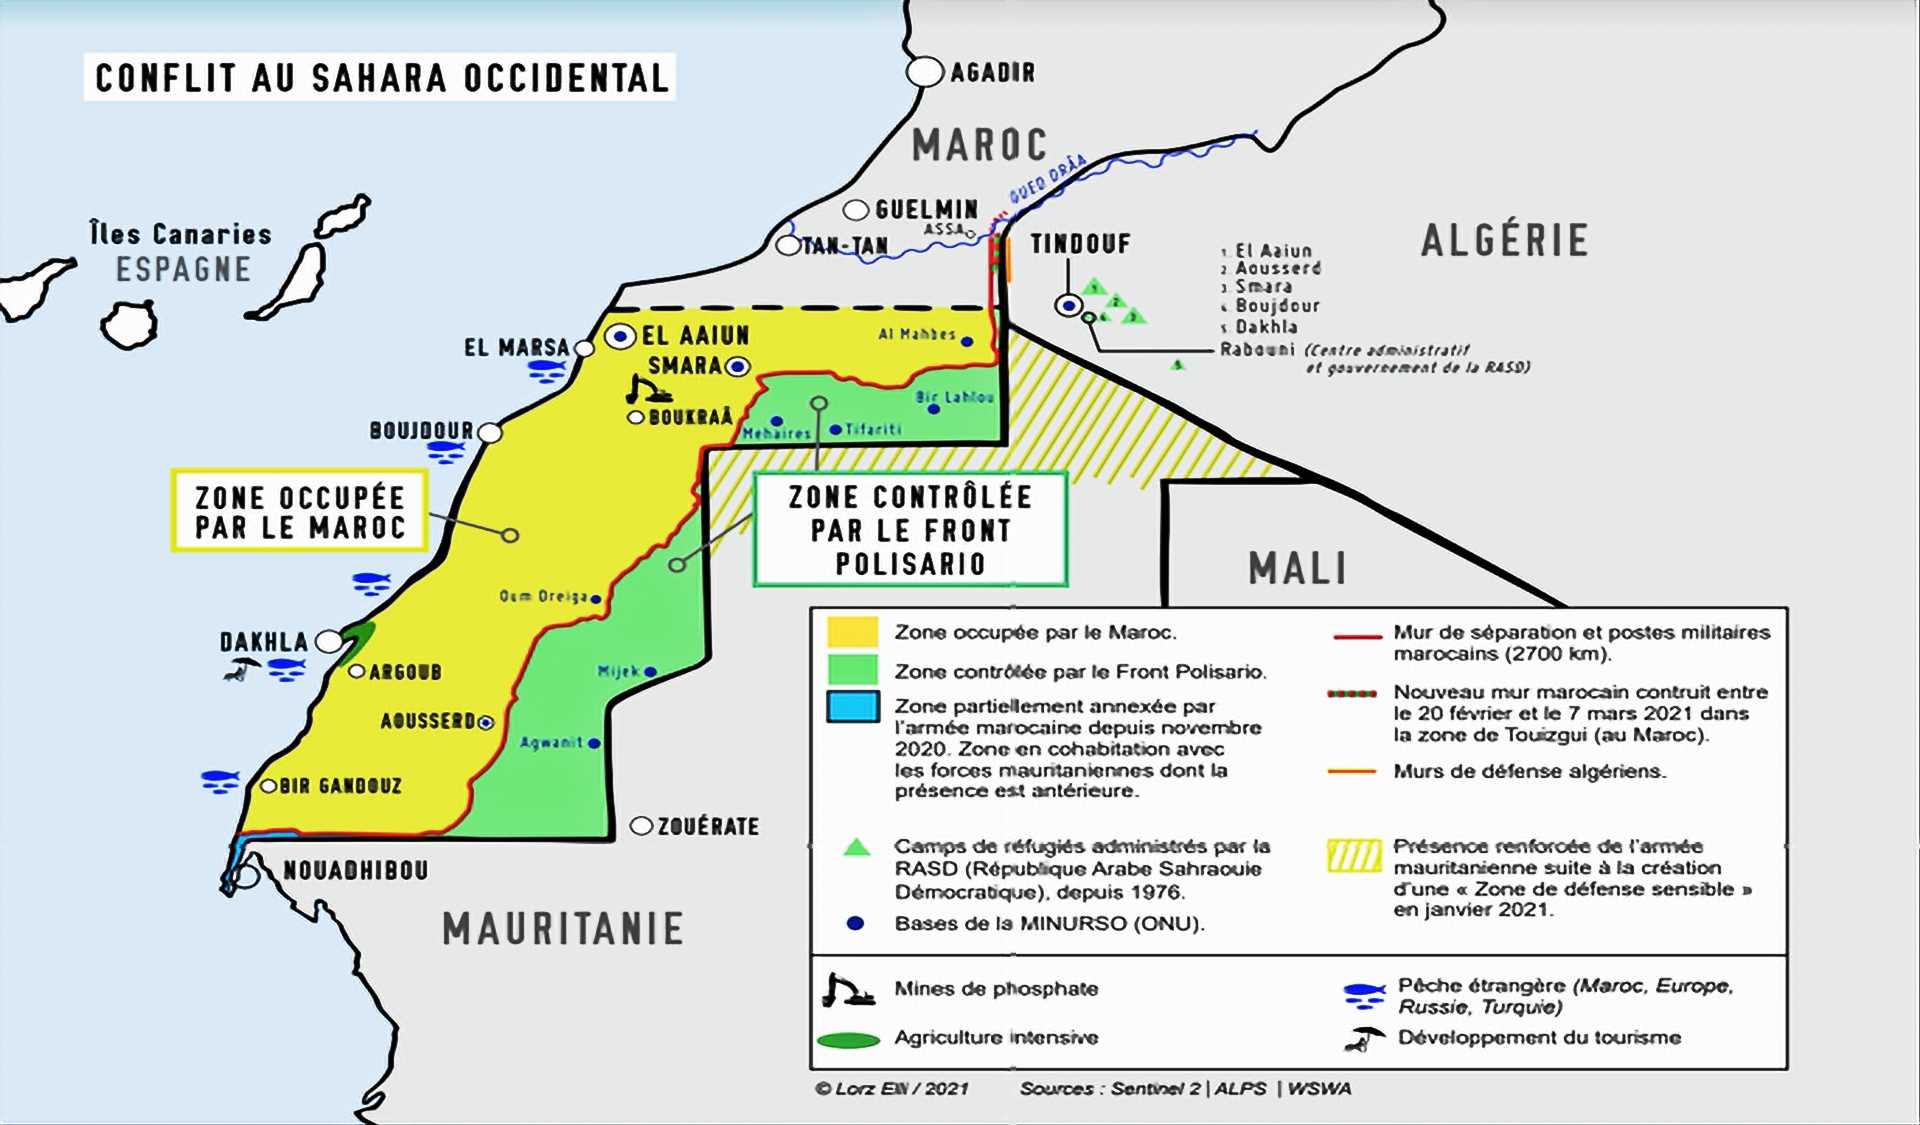 Sahara occidental : Après des décennies d’échec diplomatique, il est temps que la société civile montre la voie